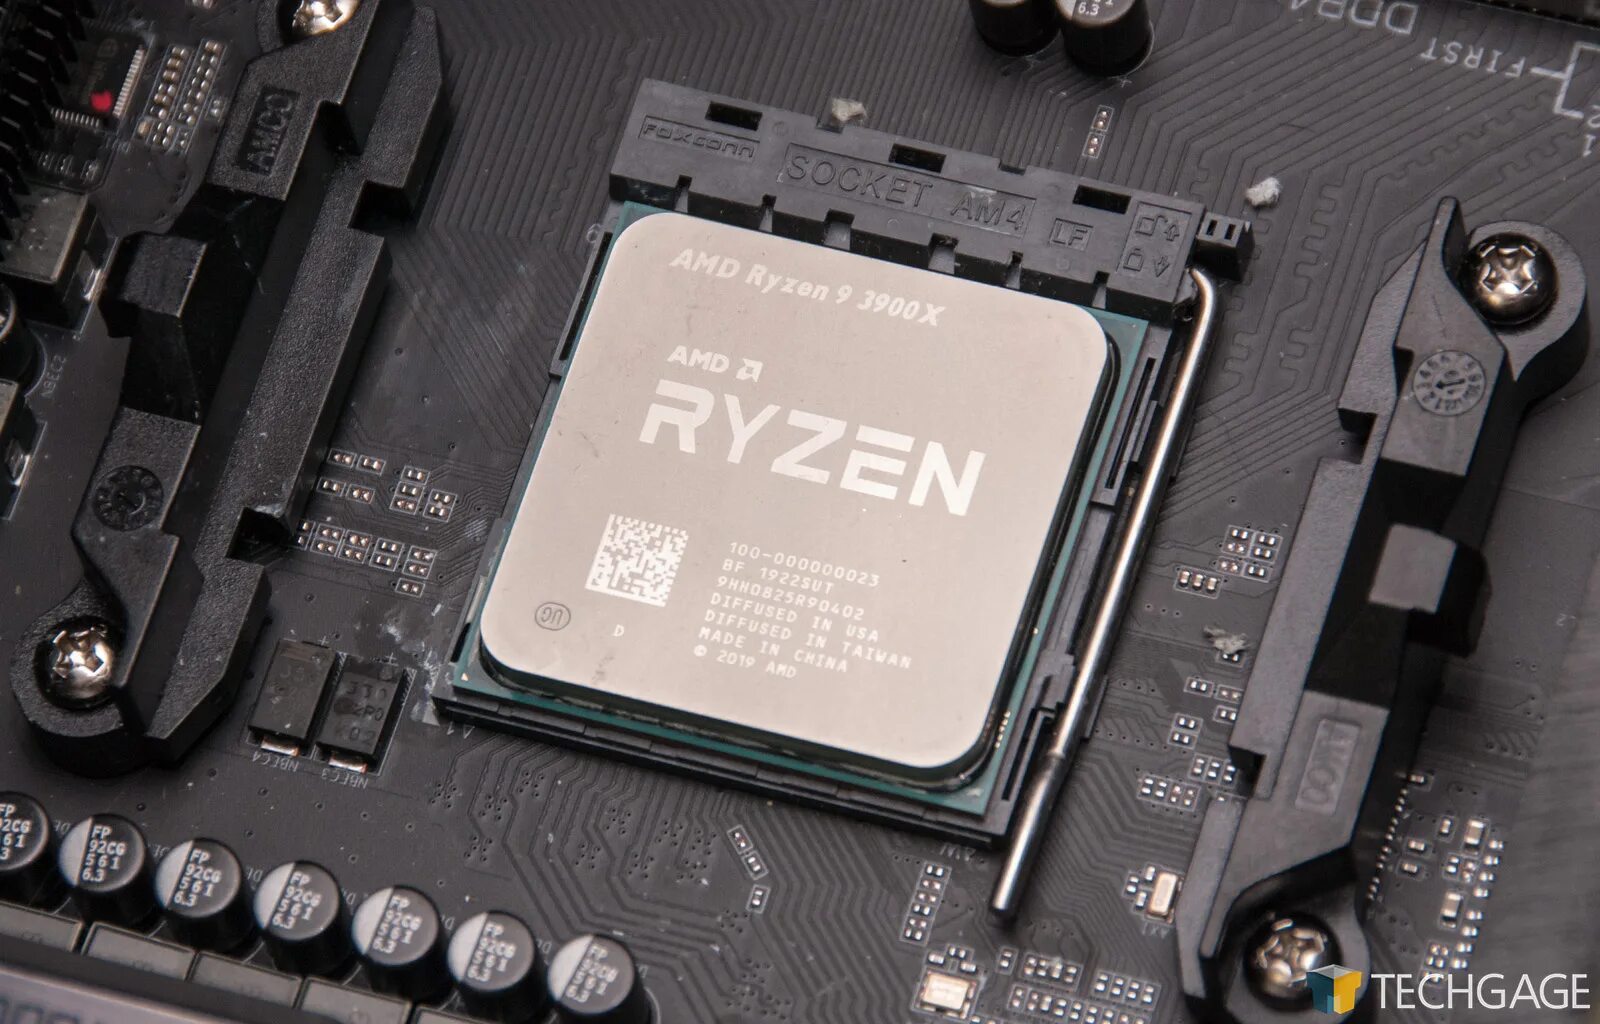 Amd ryzen 7 3700x купить. Ryzen 3700x. AMD Ryzen 7 3700x. AMD Ryzen 7 3700x 8-Core Processor. R7 3700x.